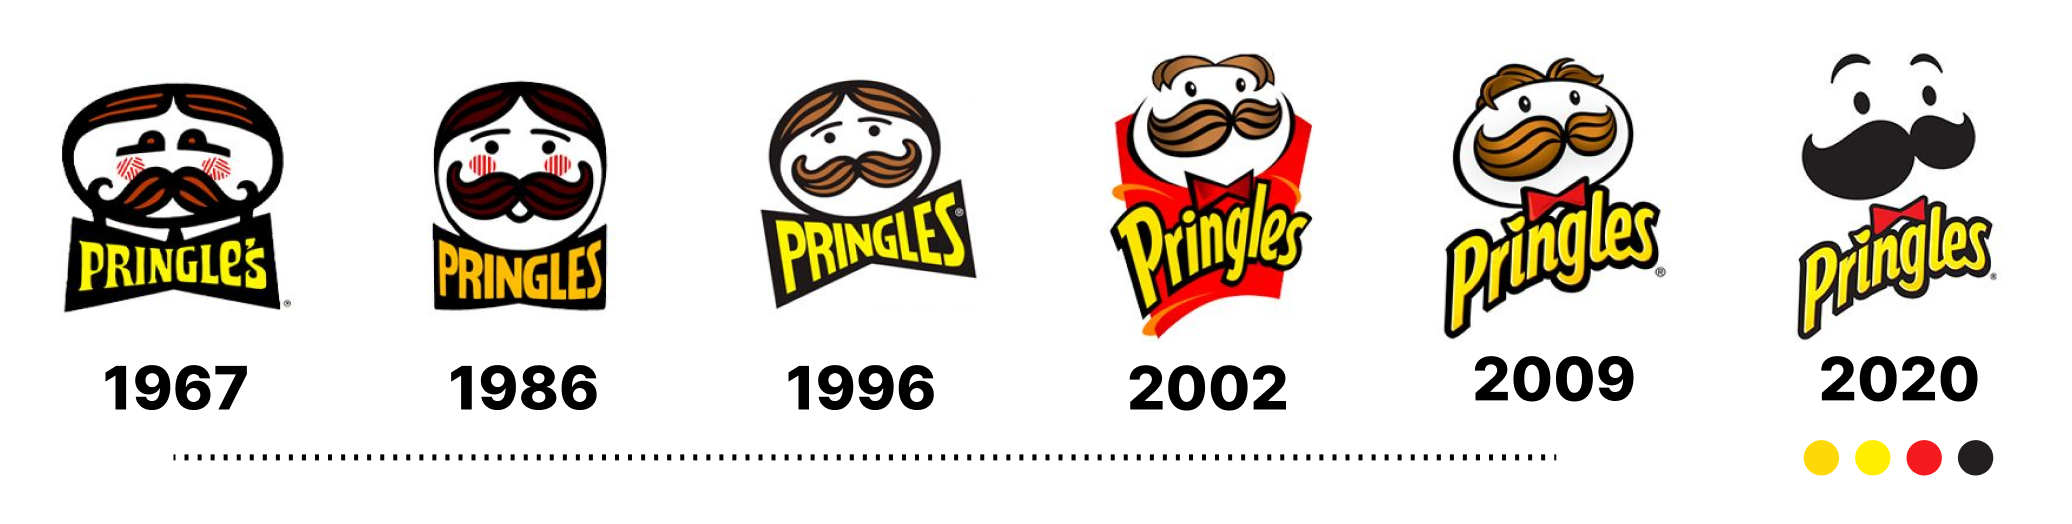 Behind Branding: Is that Pringles? | by Dhananjay Garg | Feb, 2021 ...